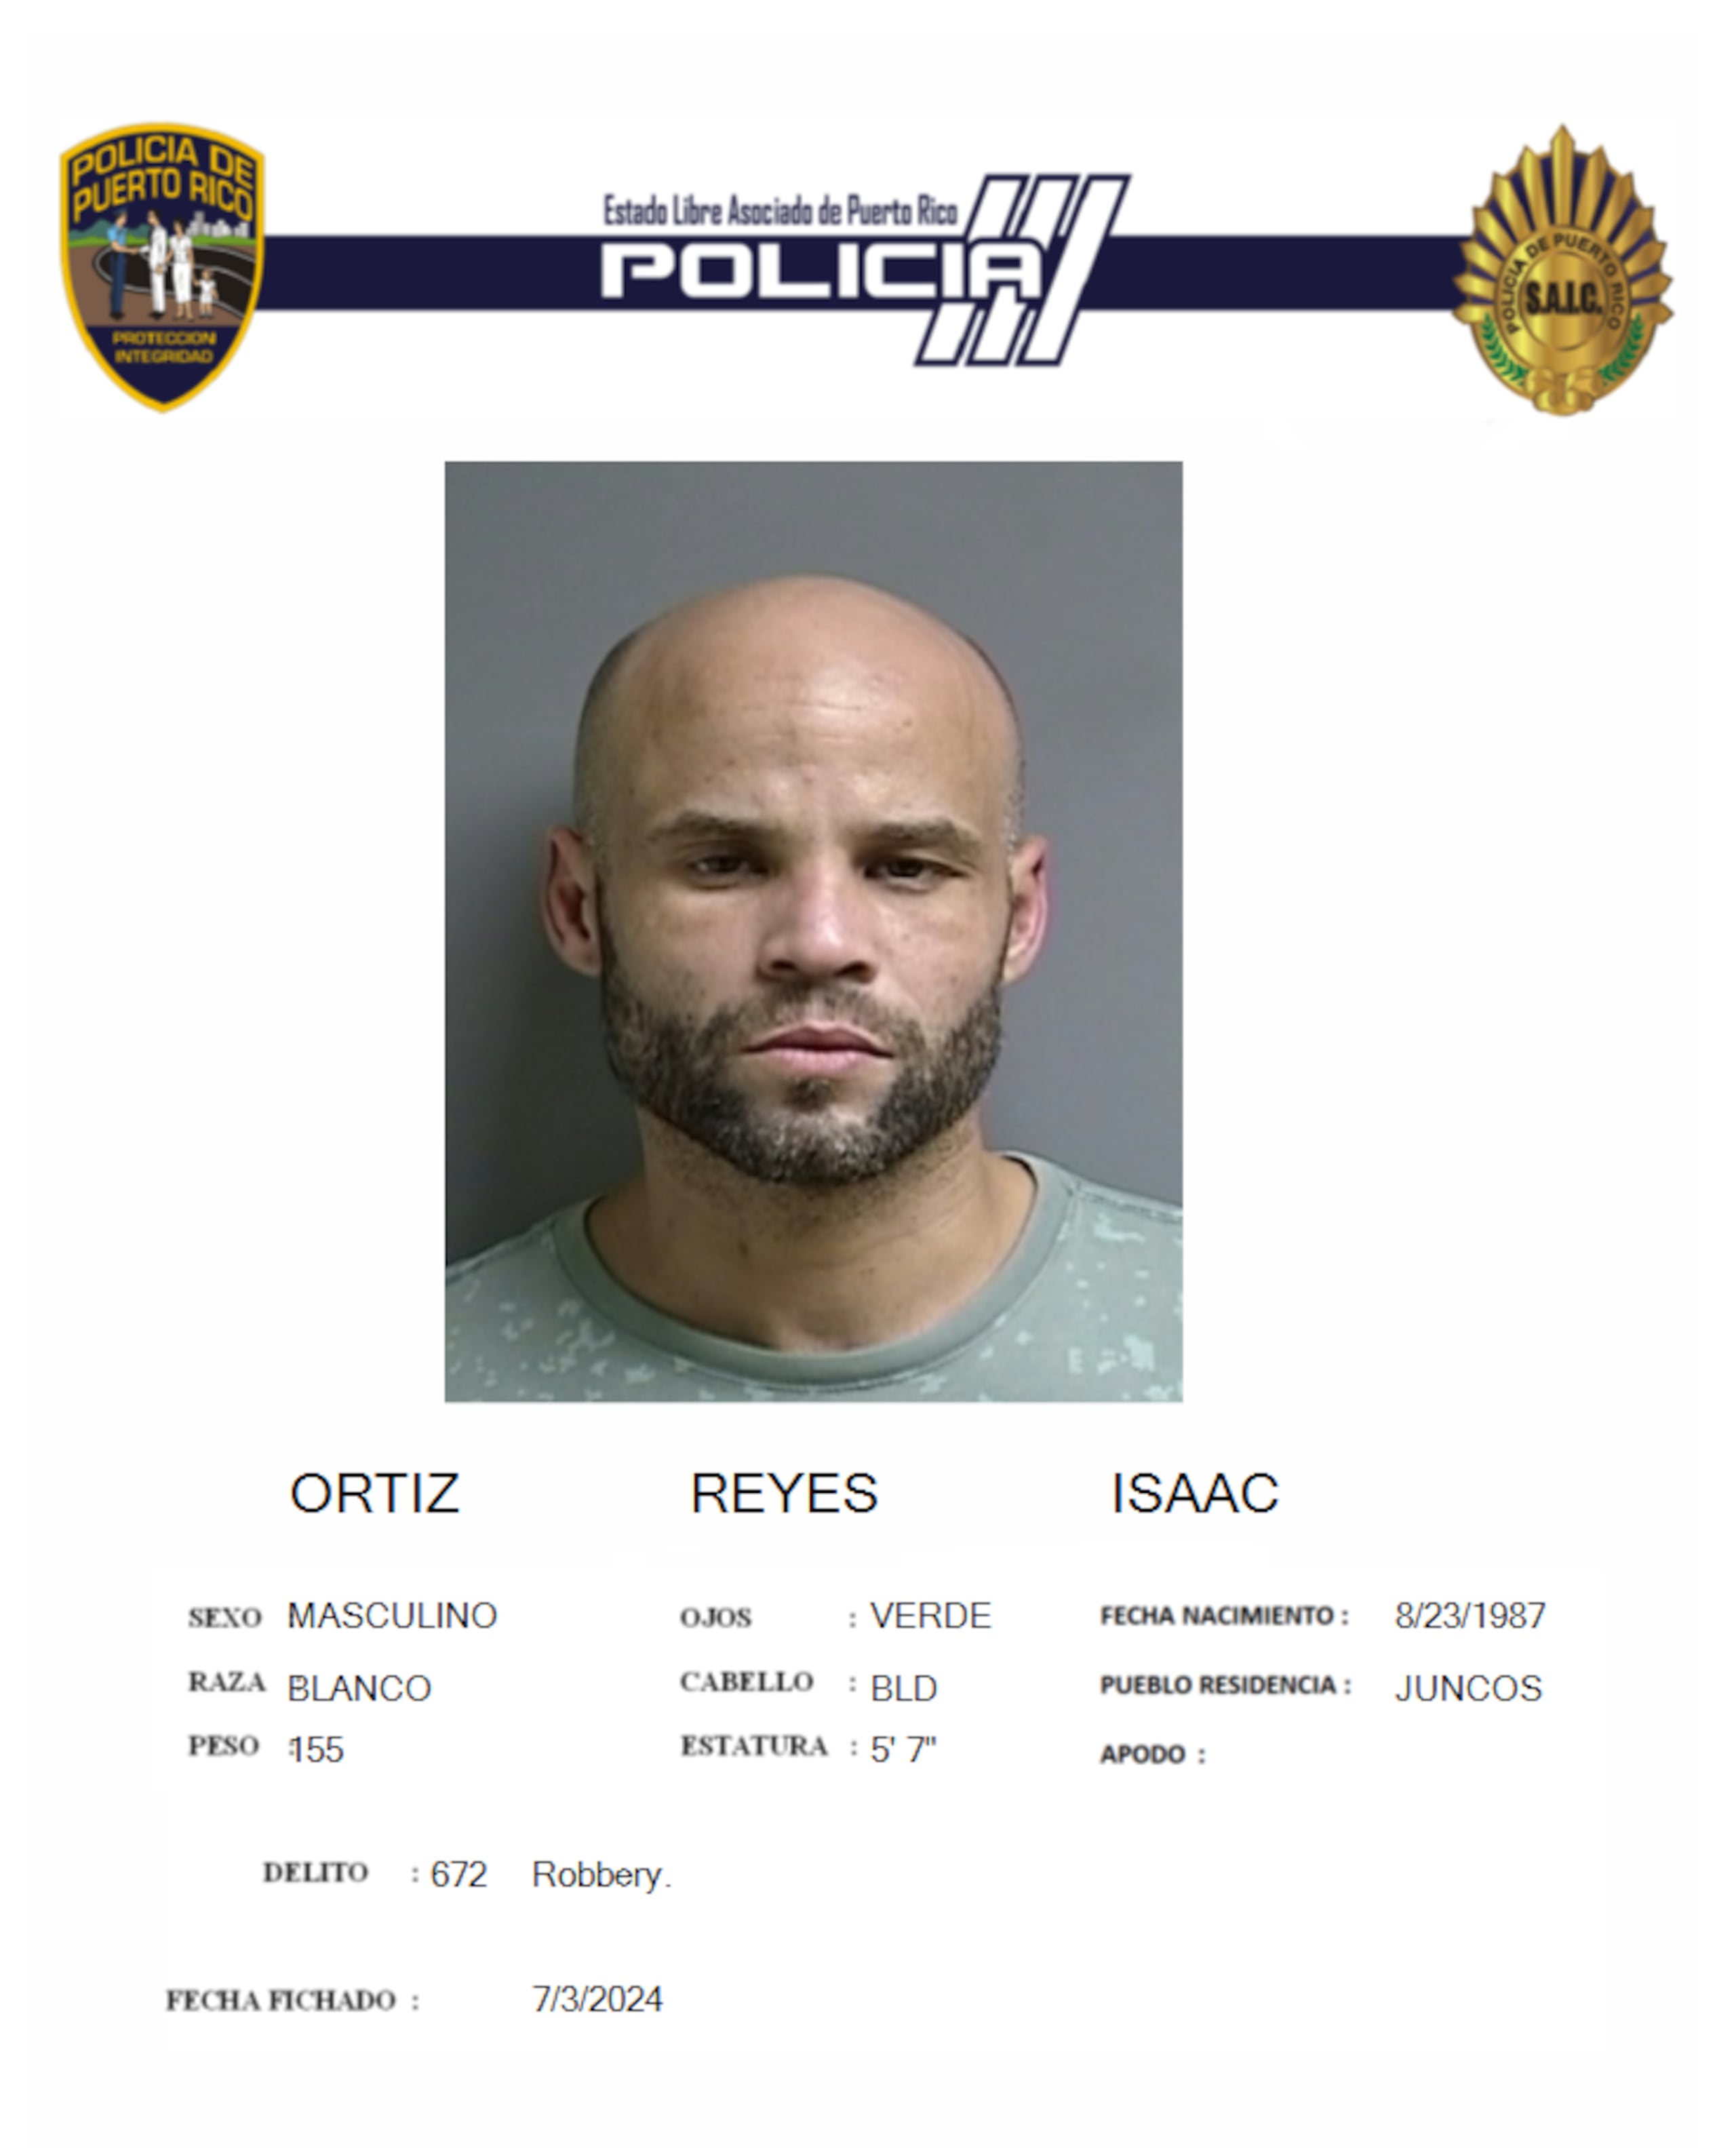 Isaac Ortiz Reyes de 36 años y vecino de Juncos,  enfrenta un cargo por robo agravado.